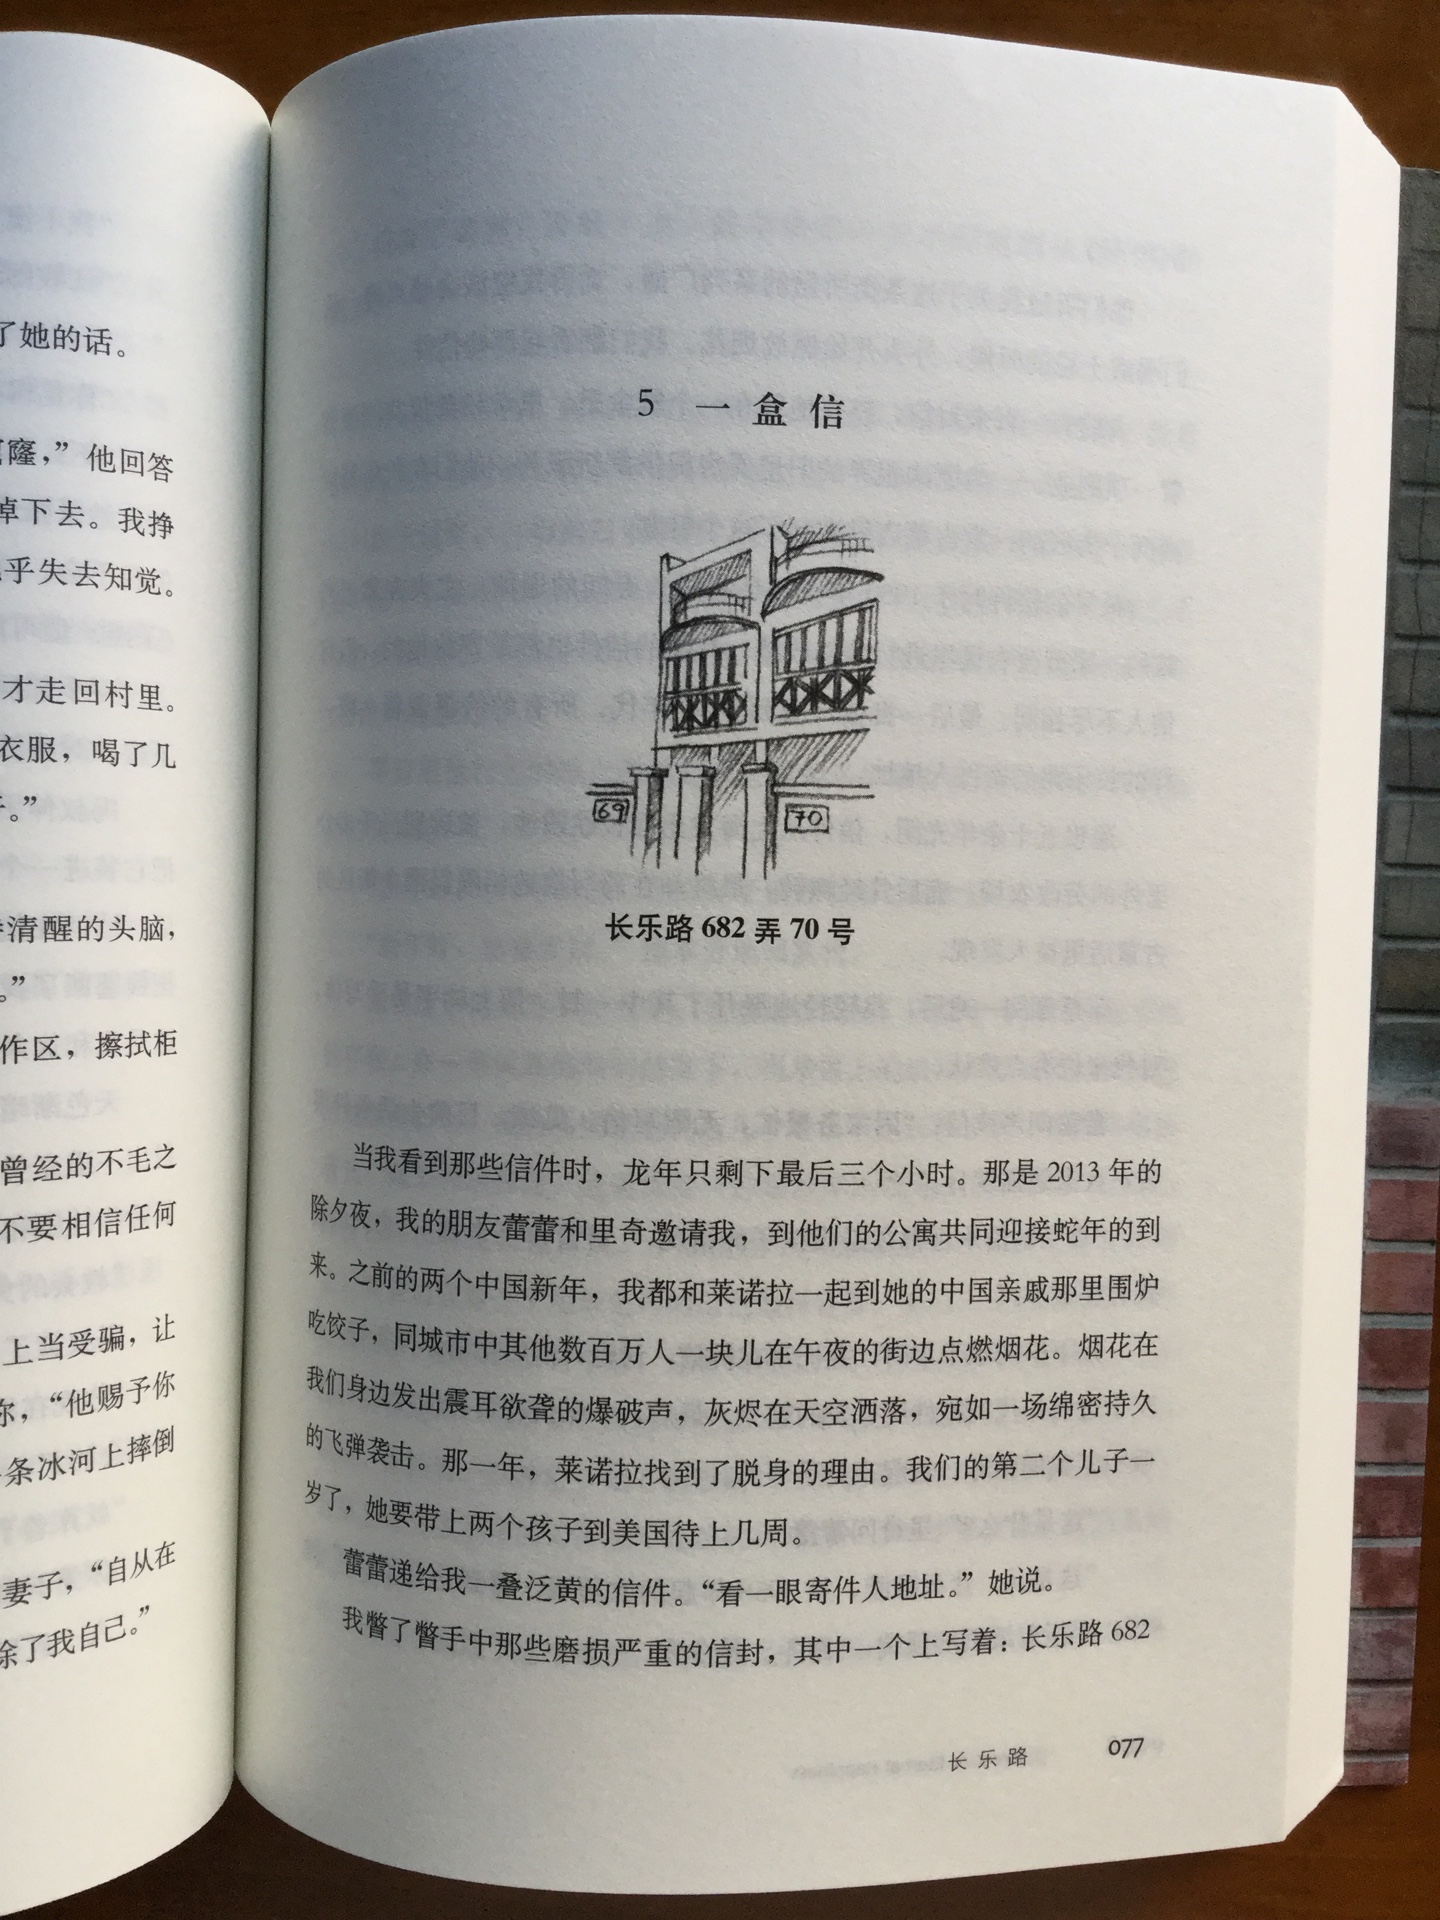 我去过上海，对上海的里弄非常感兴趣，对里弄的故事更感兴趣。这本书说的就是上海长乐路的里弄故事。